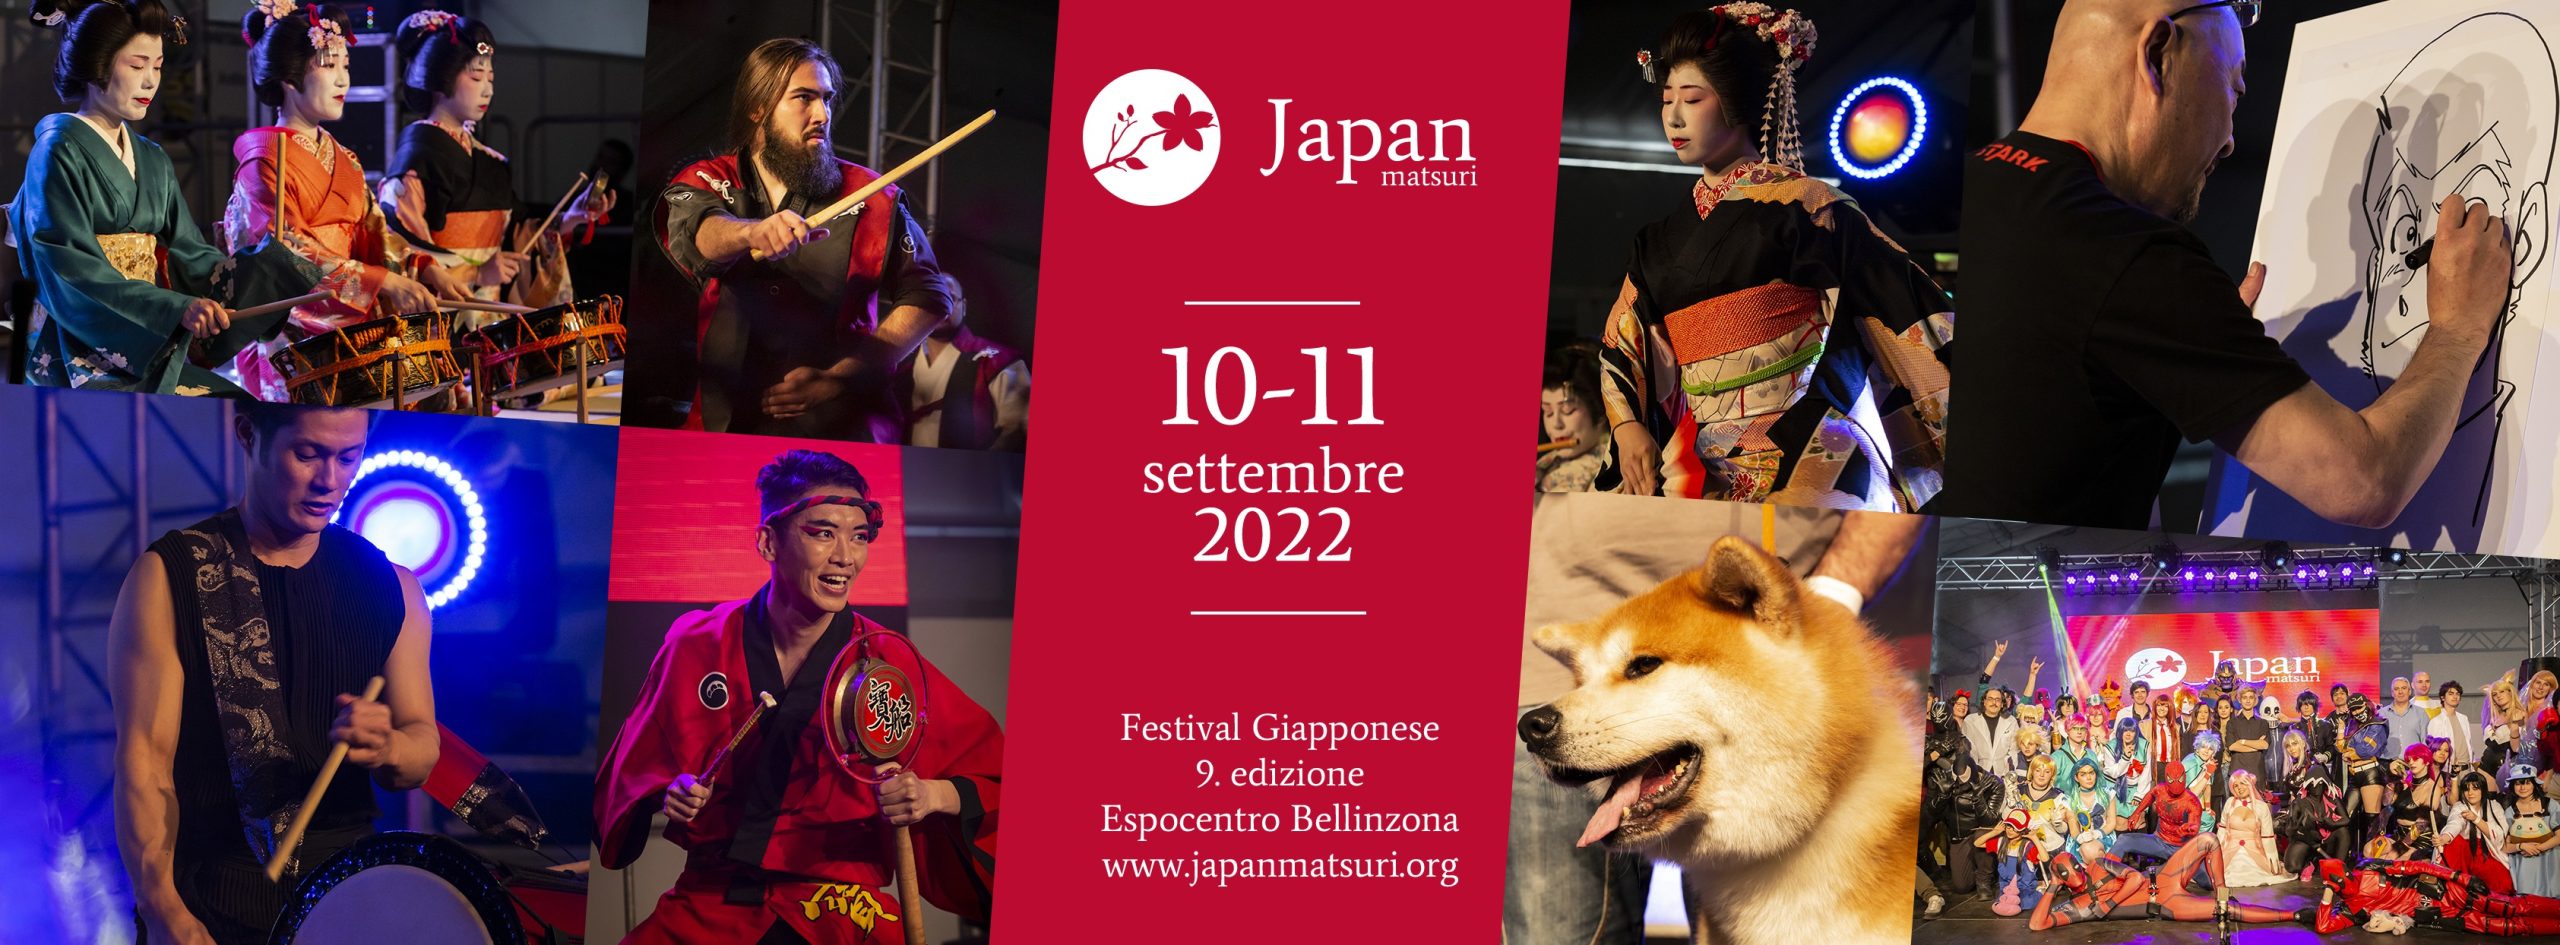 Japan Matsuri – Festival Giapponese 2022